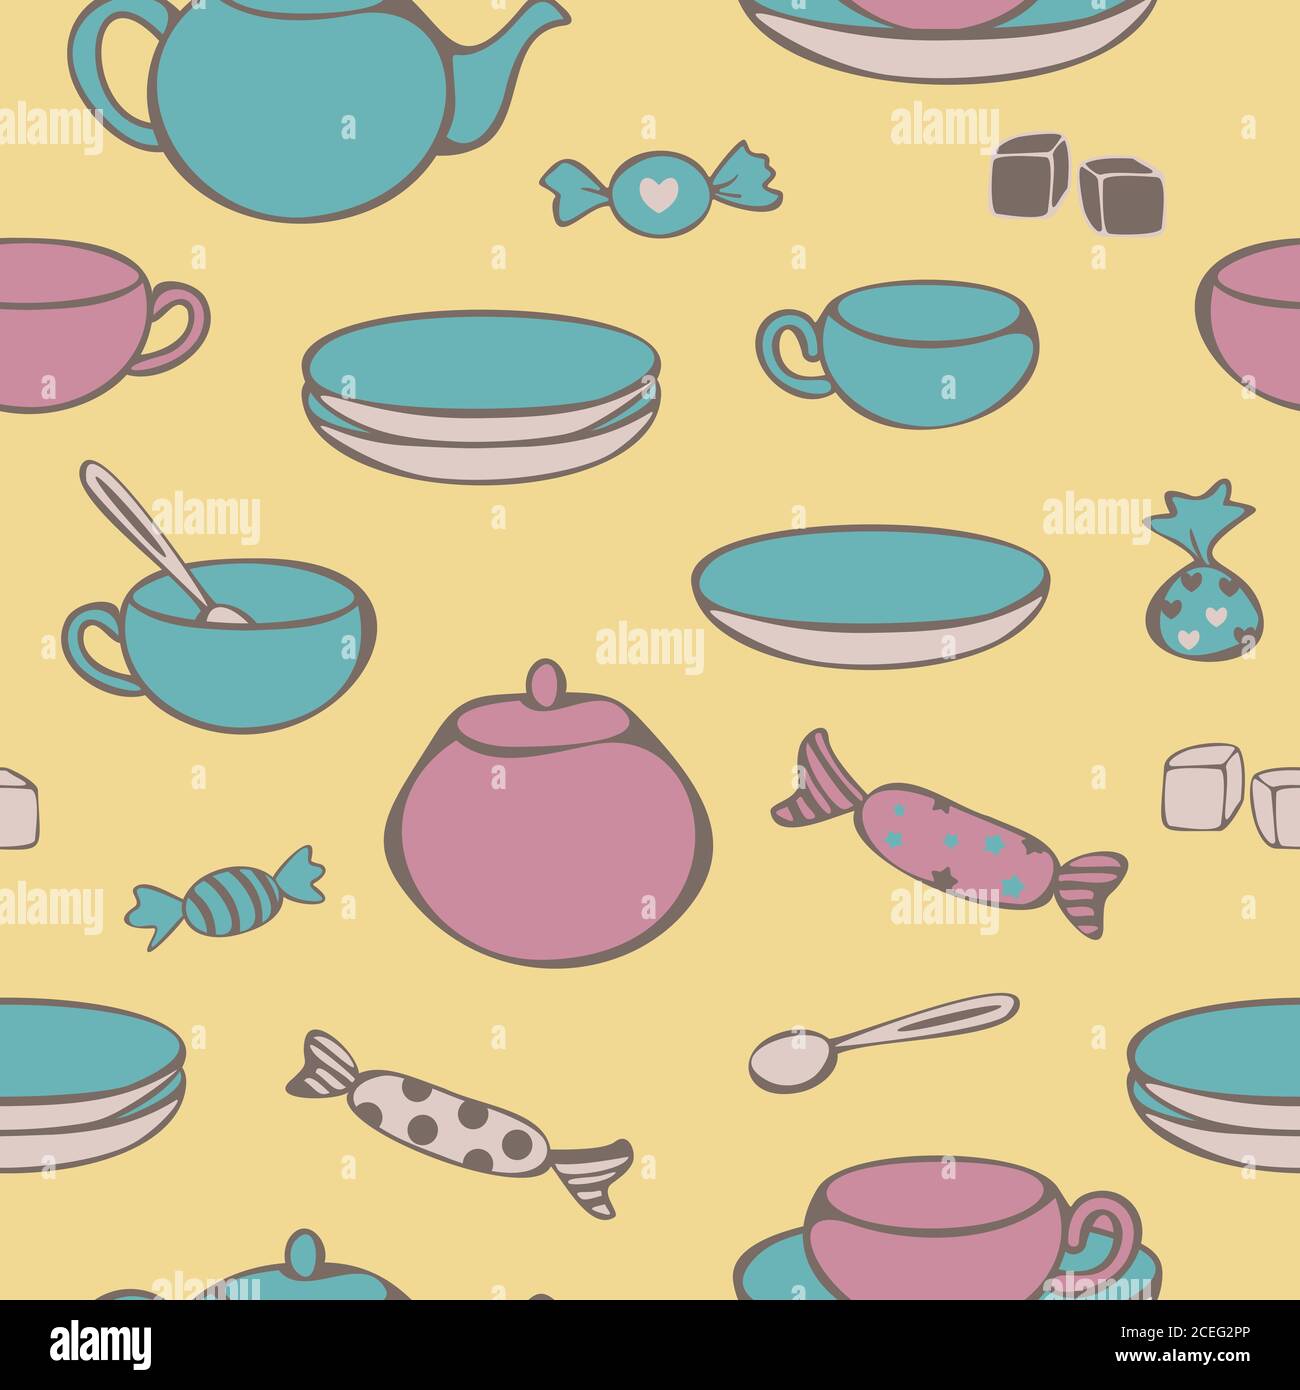 Vektor Seemless Muster von Geschirr für Tee-Trinken - Tassen, Tassen, Teekanne, Zucker Schüssel, Klumpen Zucker und Süßigkeiten. Konzept für Teeladen. Stock Vektor